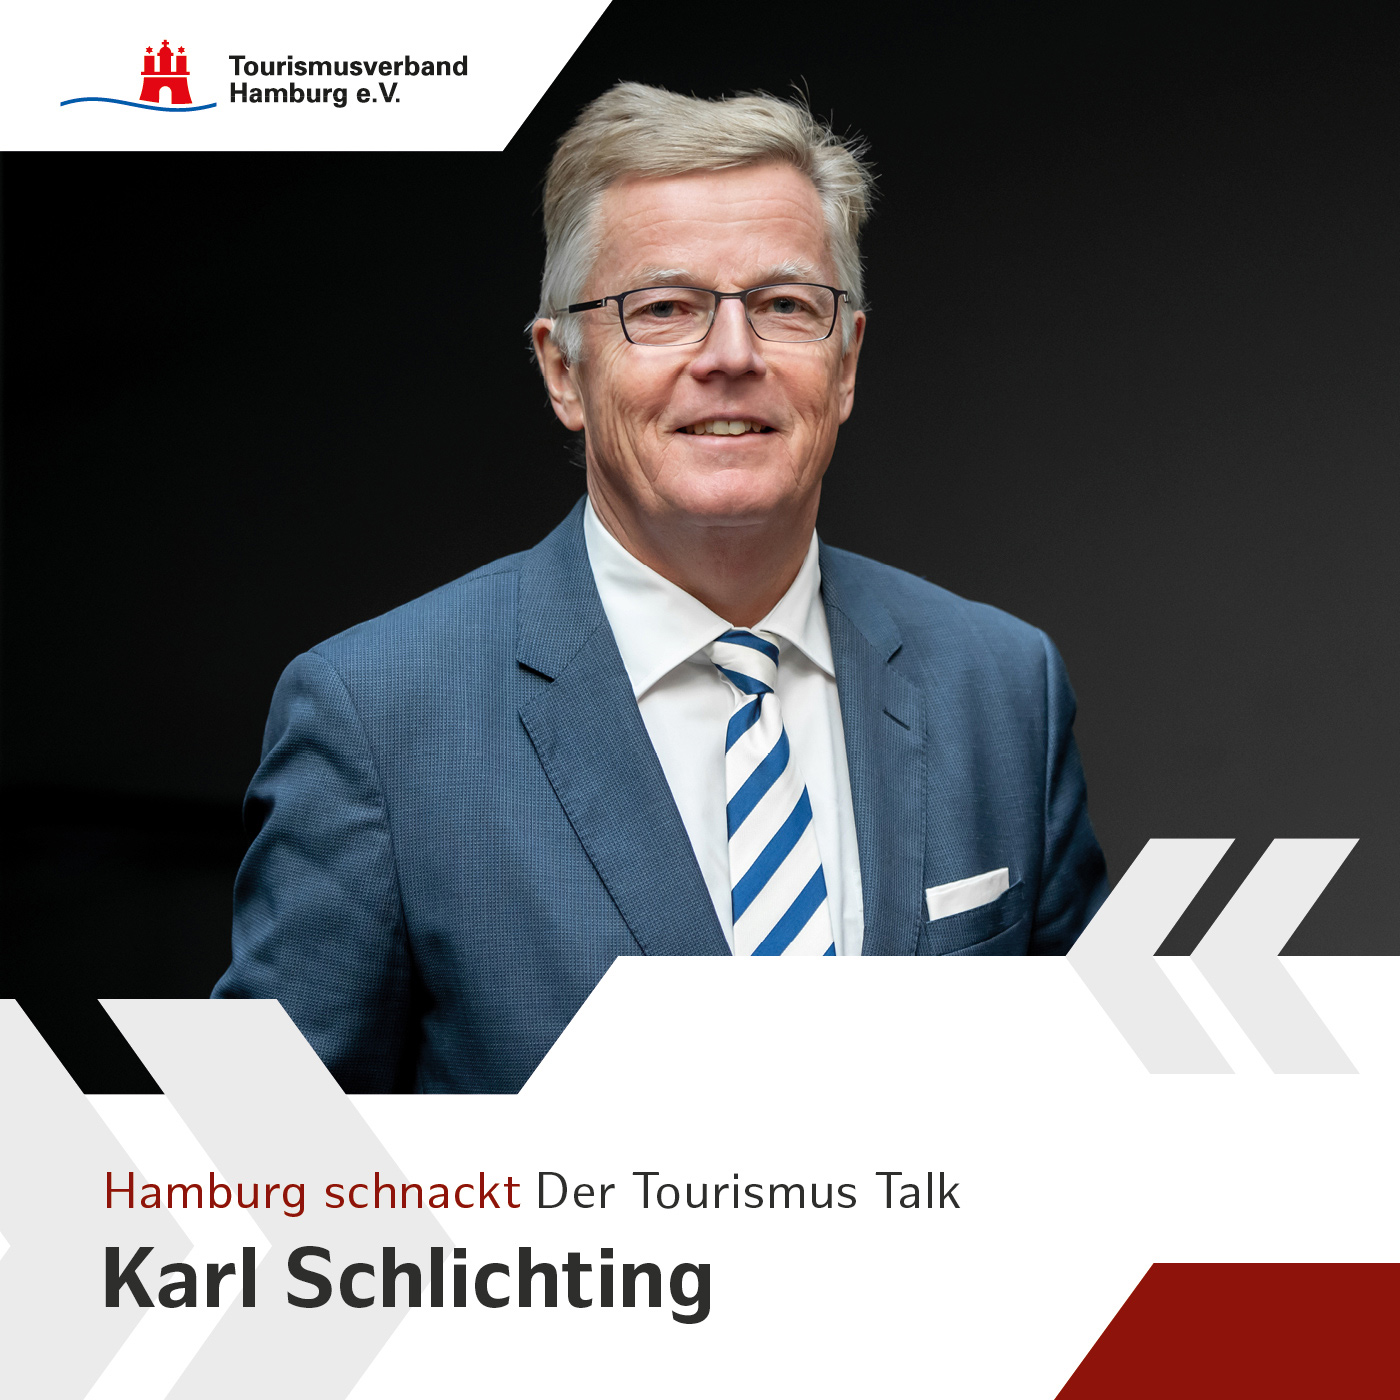 Hamburg schnackt mit Karl Schlichting